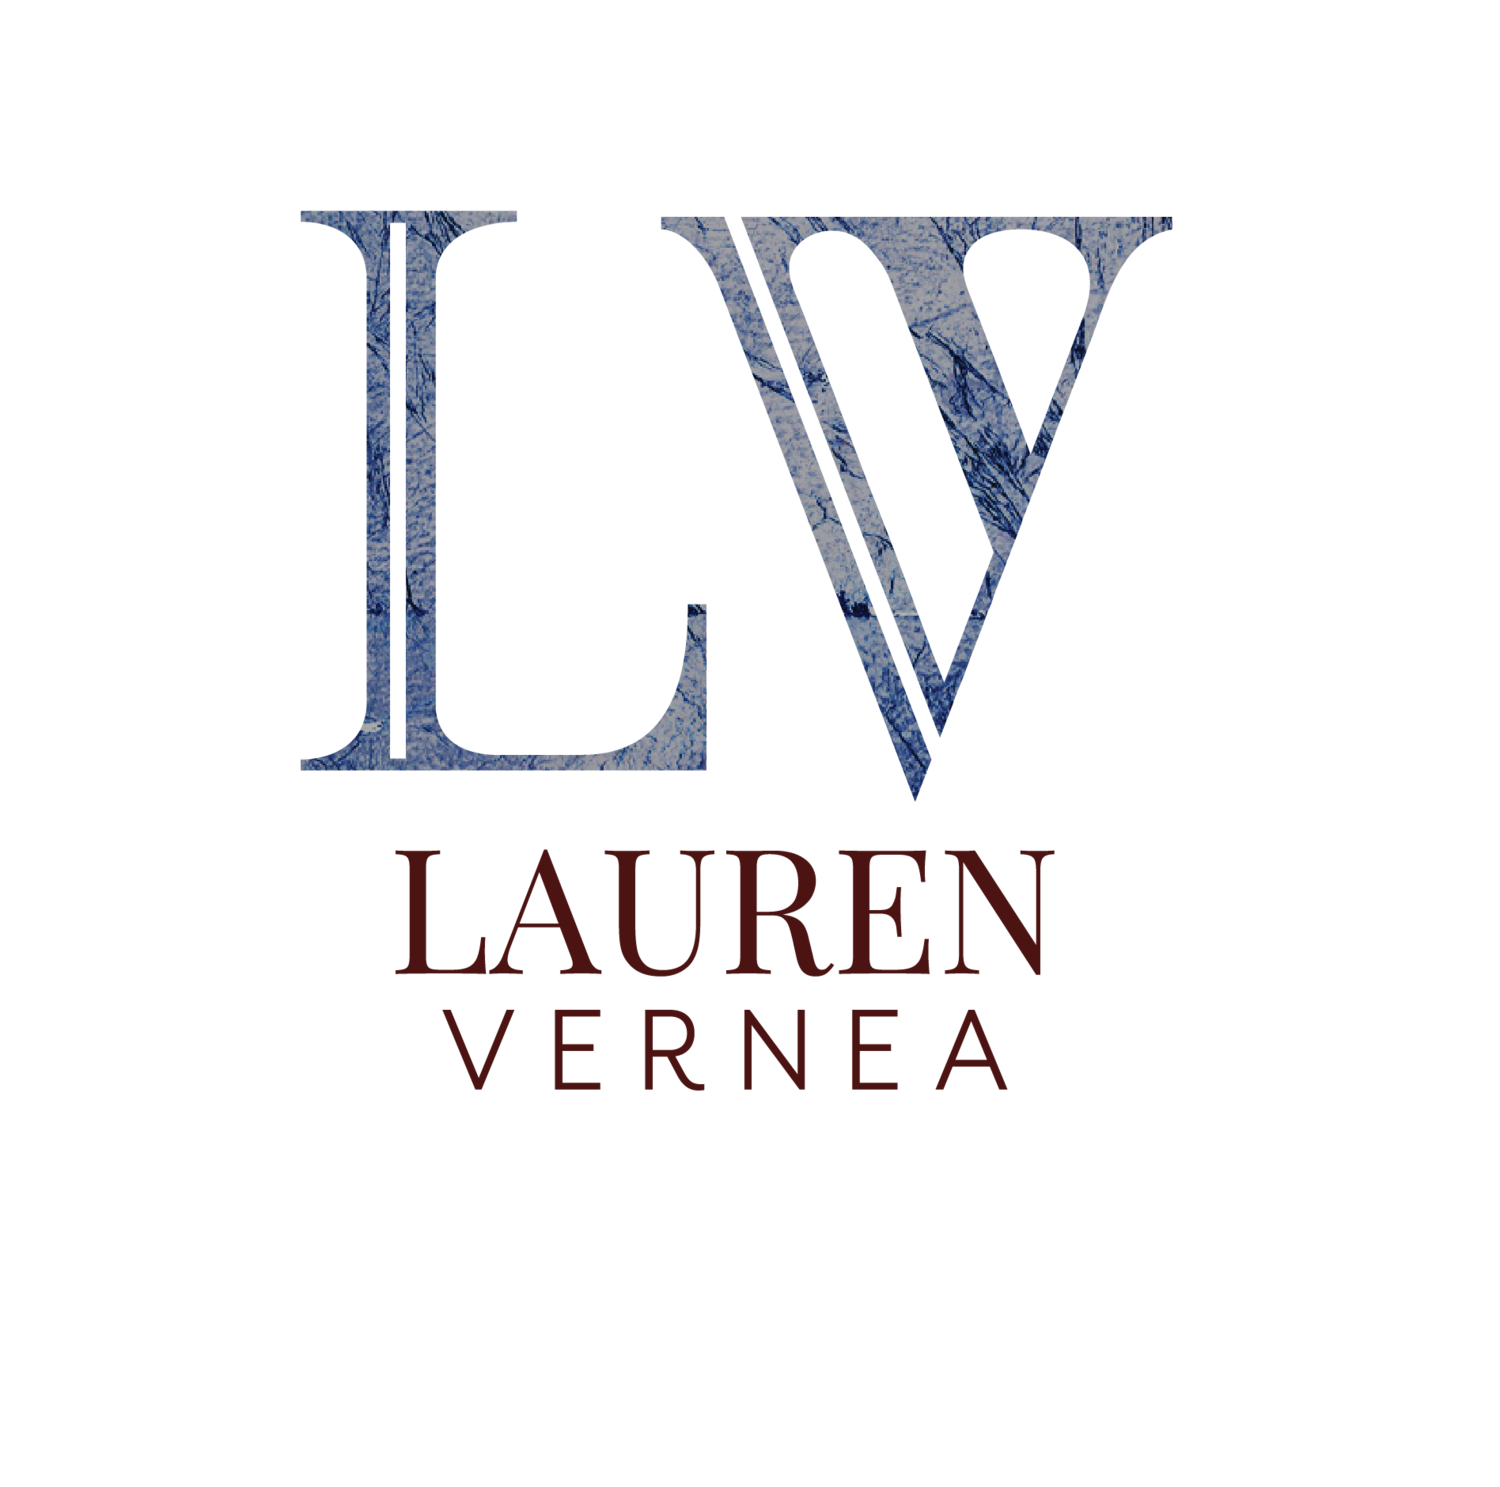 Lauren Vernea